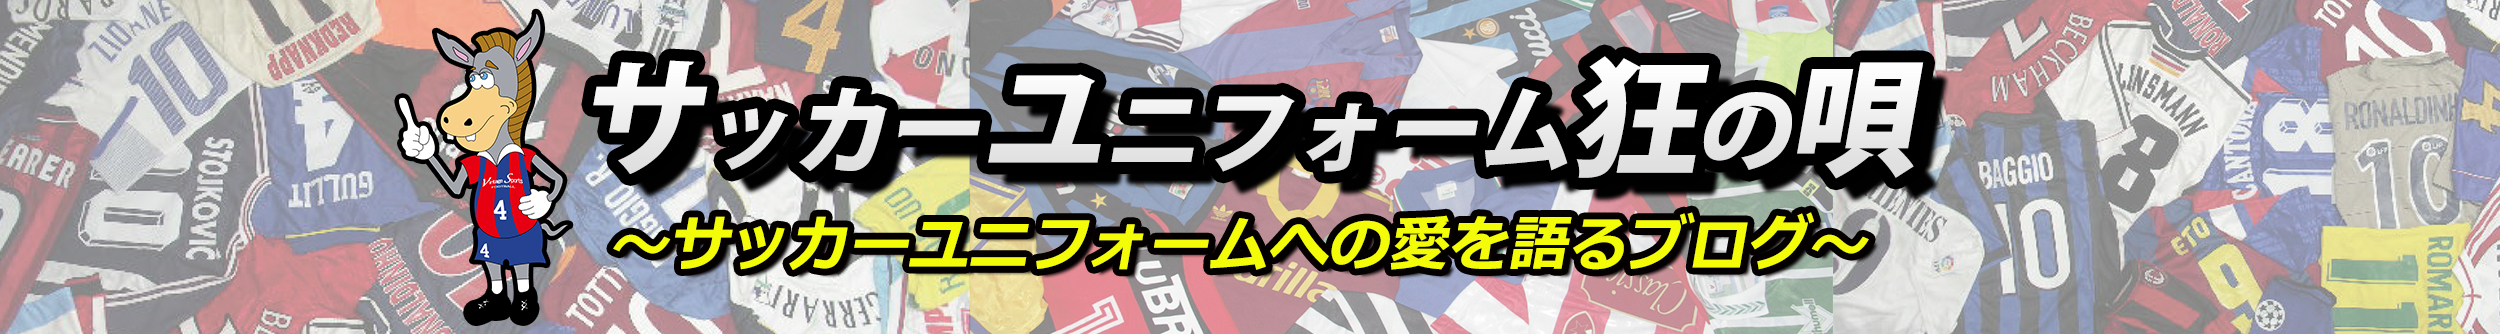 サッカーユニフォーム専門店 Vintagesports Football サッカー用品買取販売 ヴィンテージスポーツ 日本